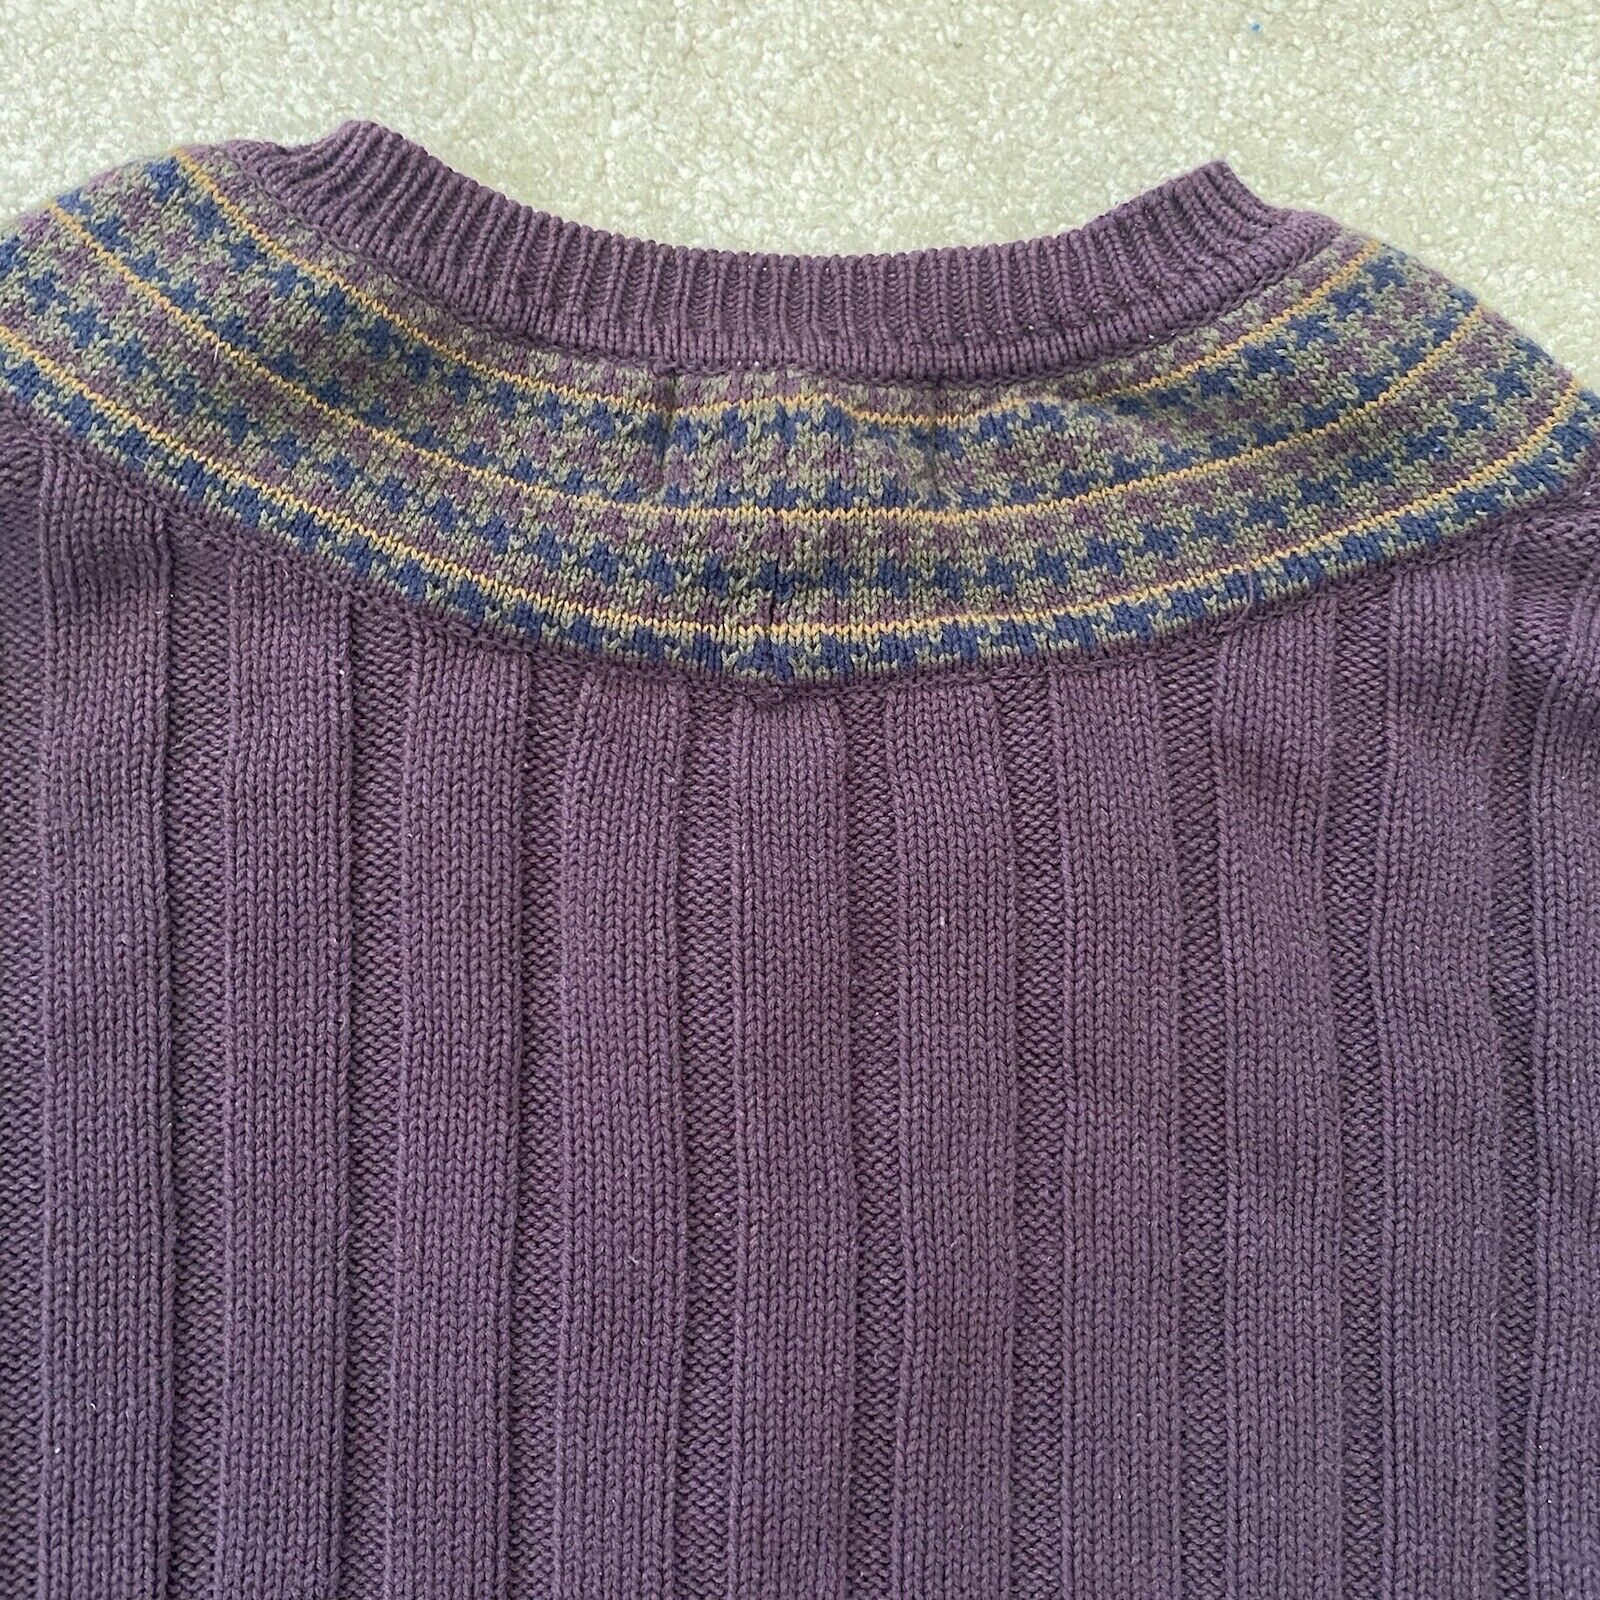 Woods & Gray Men's Purple Sweater V-Neck Sz L Cot… - image 6